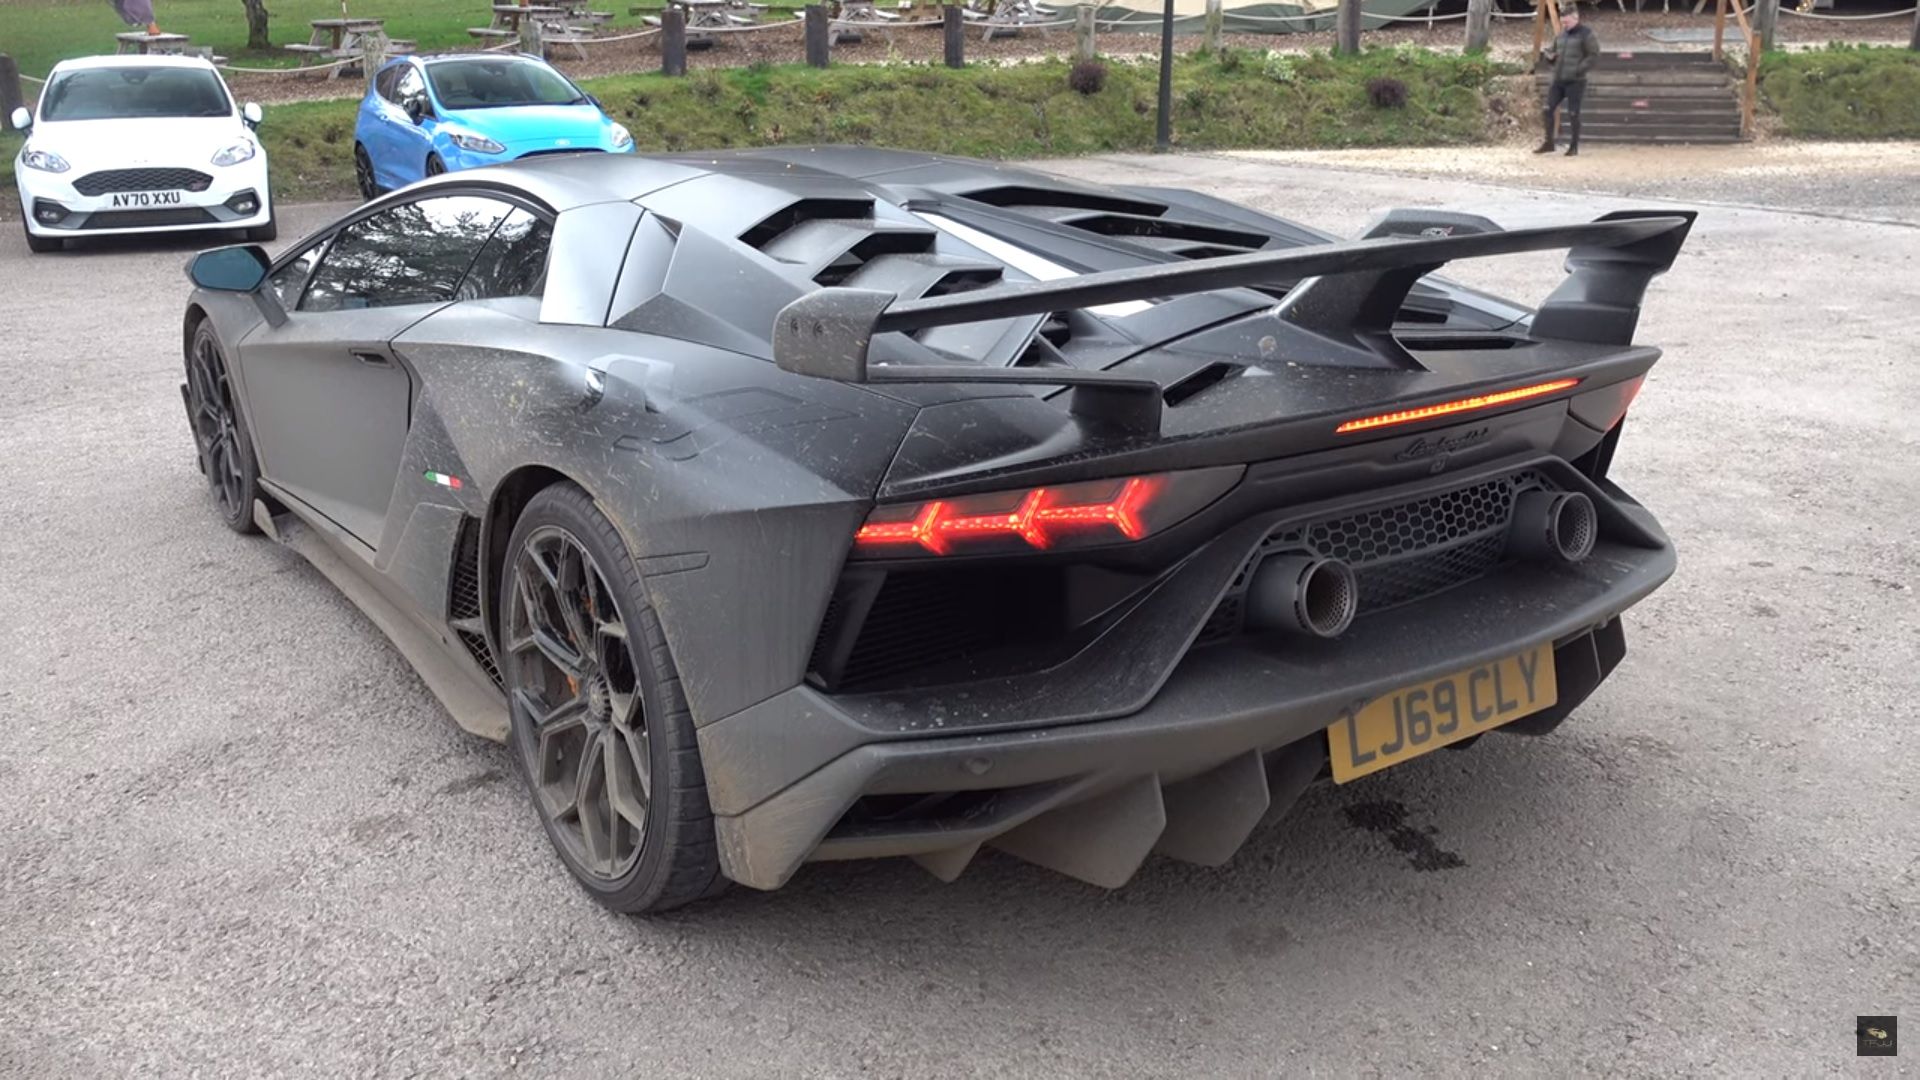 Lamborghini SVJ, black, rear quarter view, parked in lot